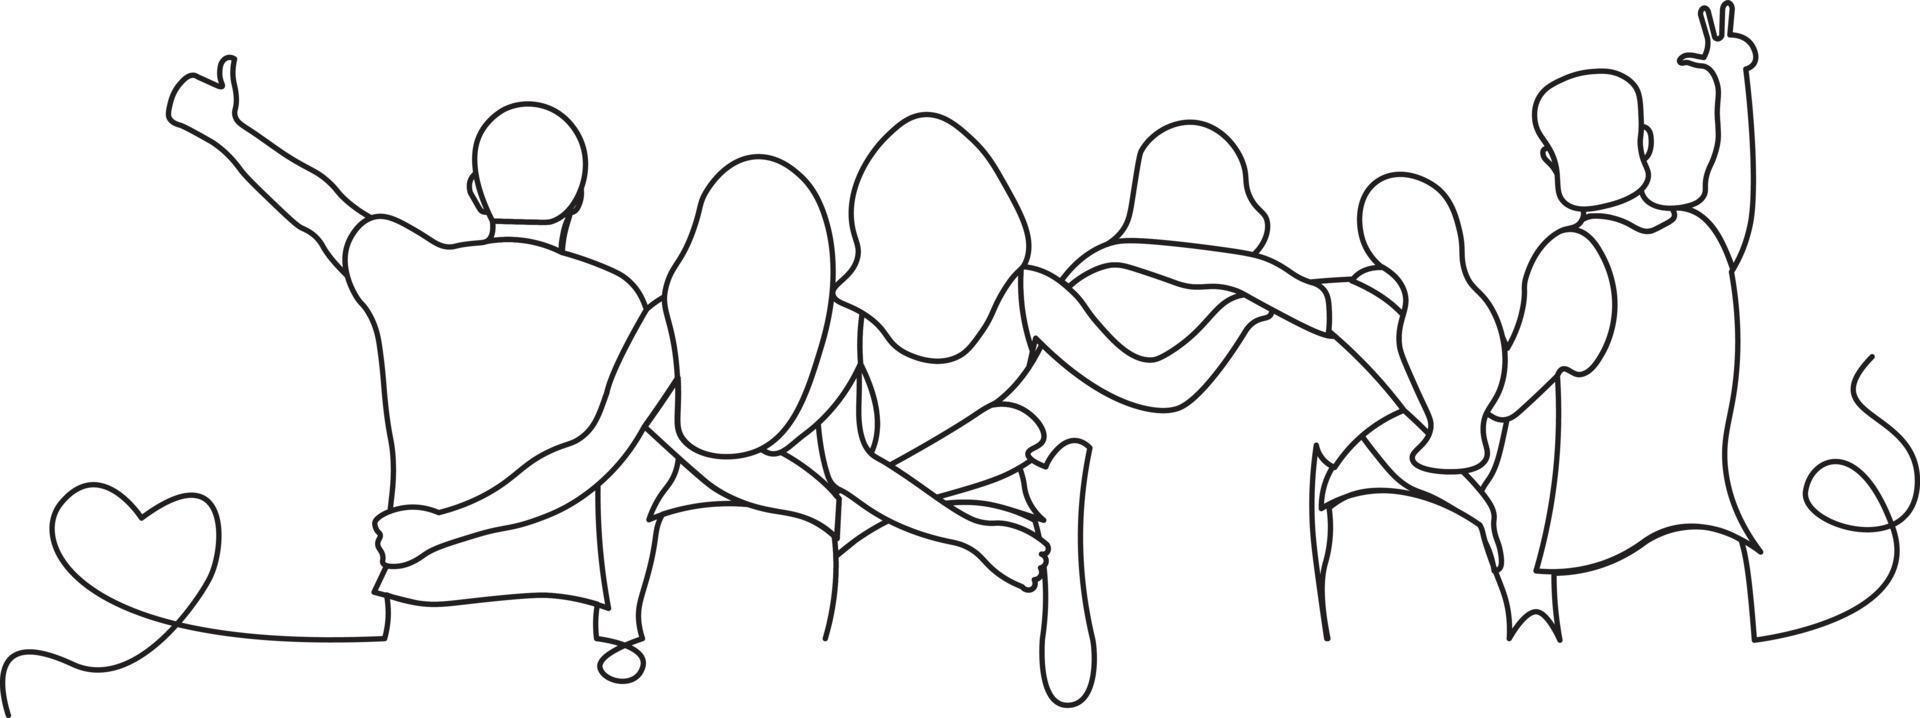 flat design illustration of people hugging line art vector